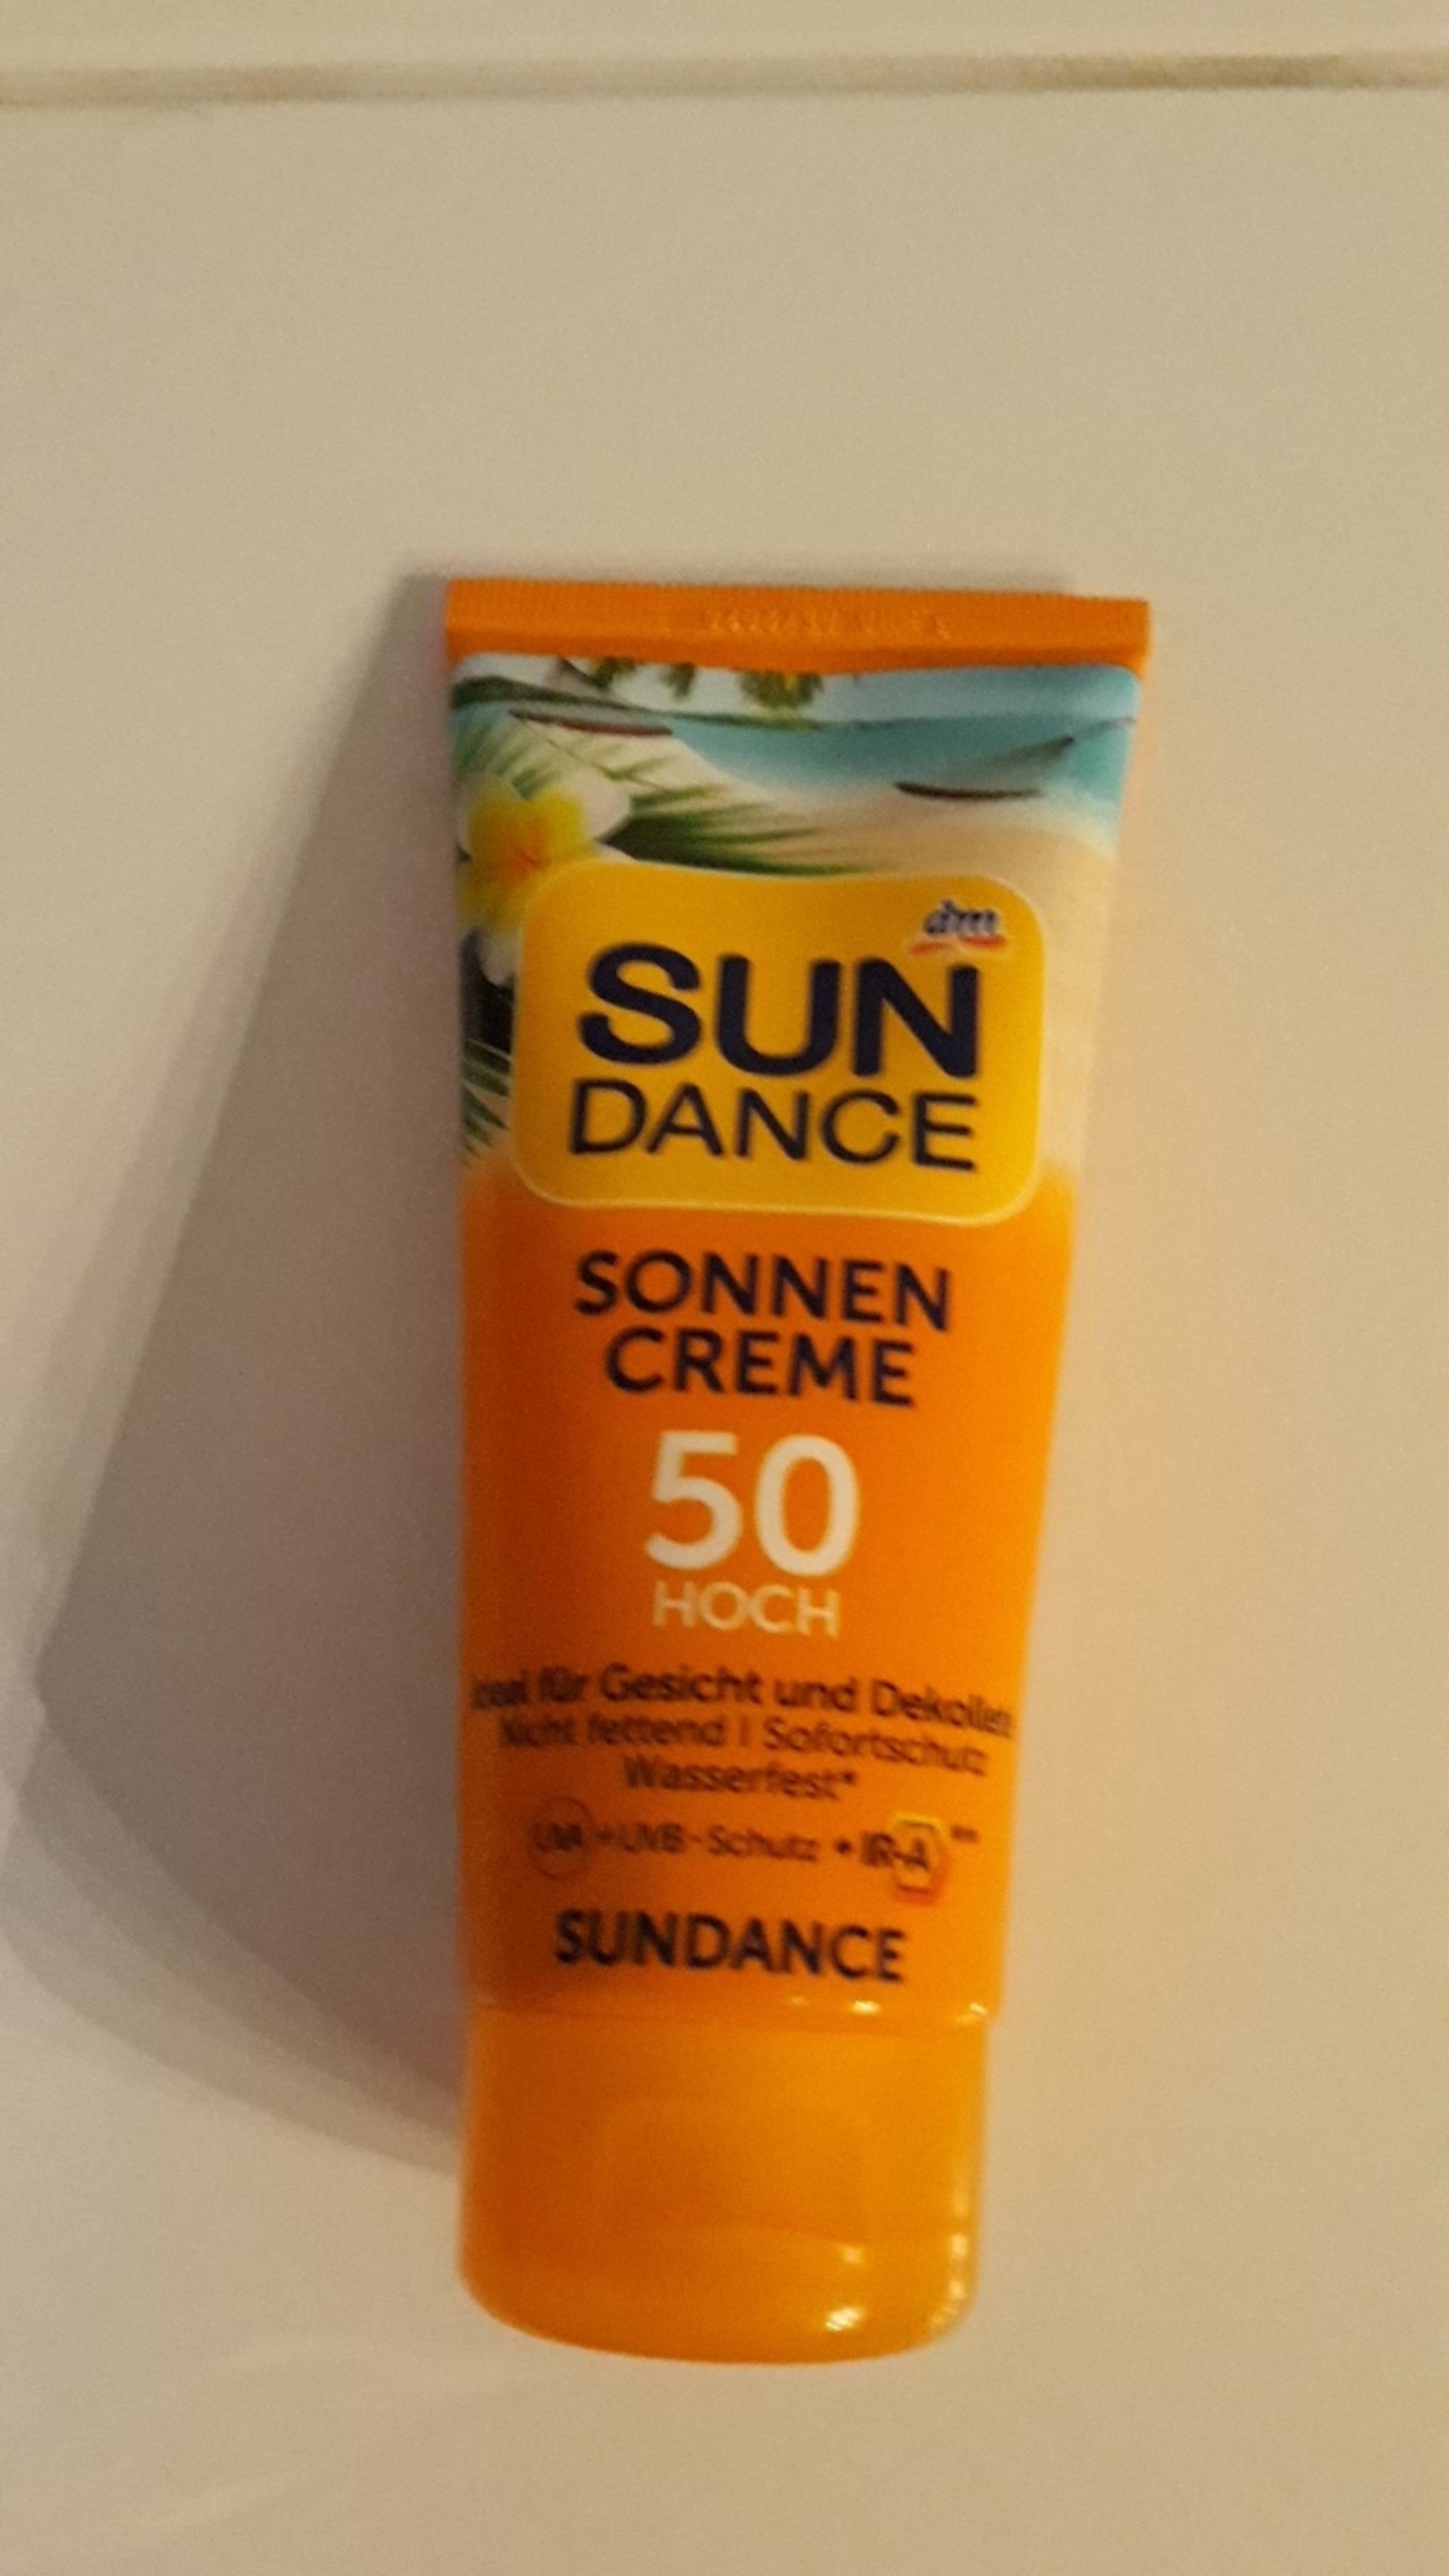 SUNDANCE - Sonnen creme - 50 hoch